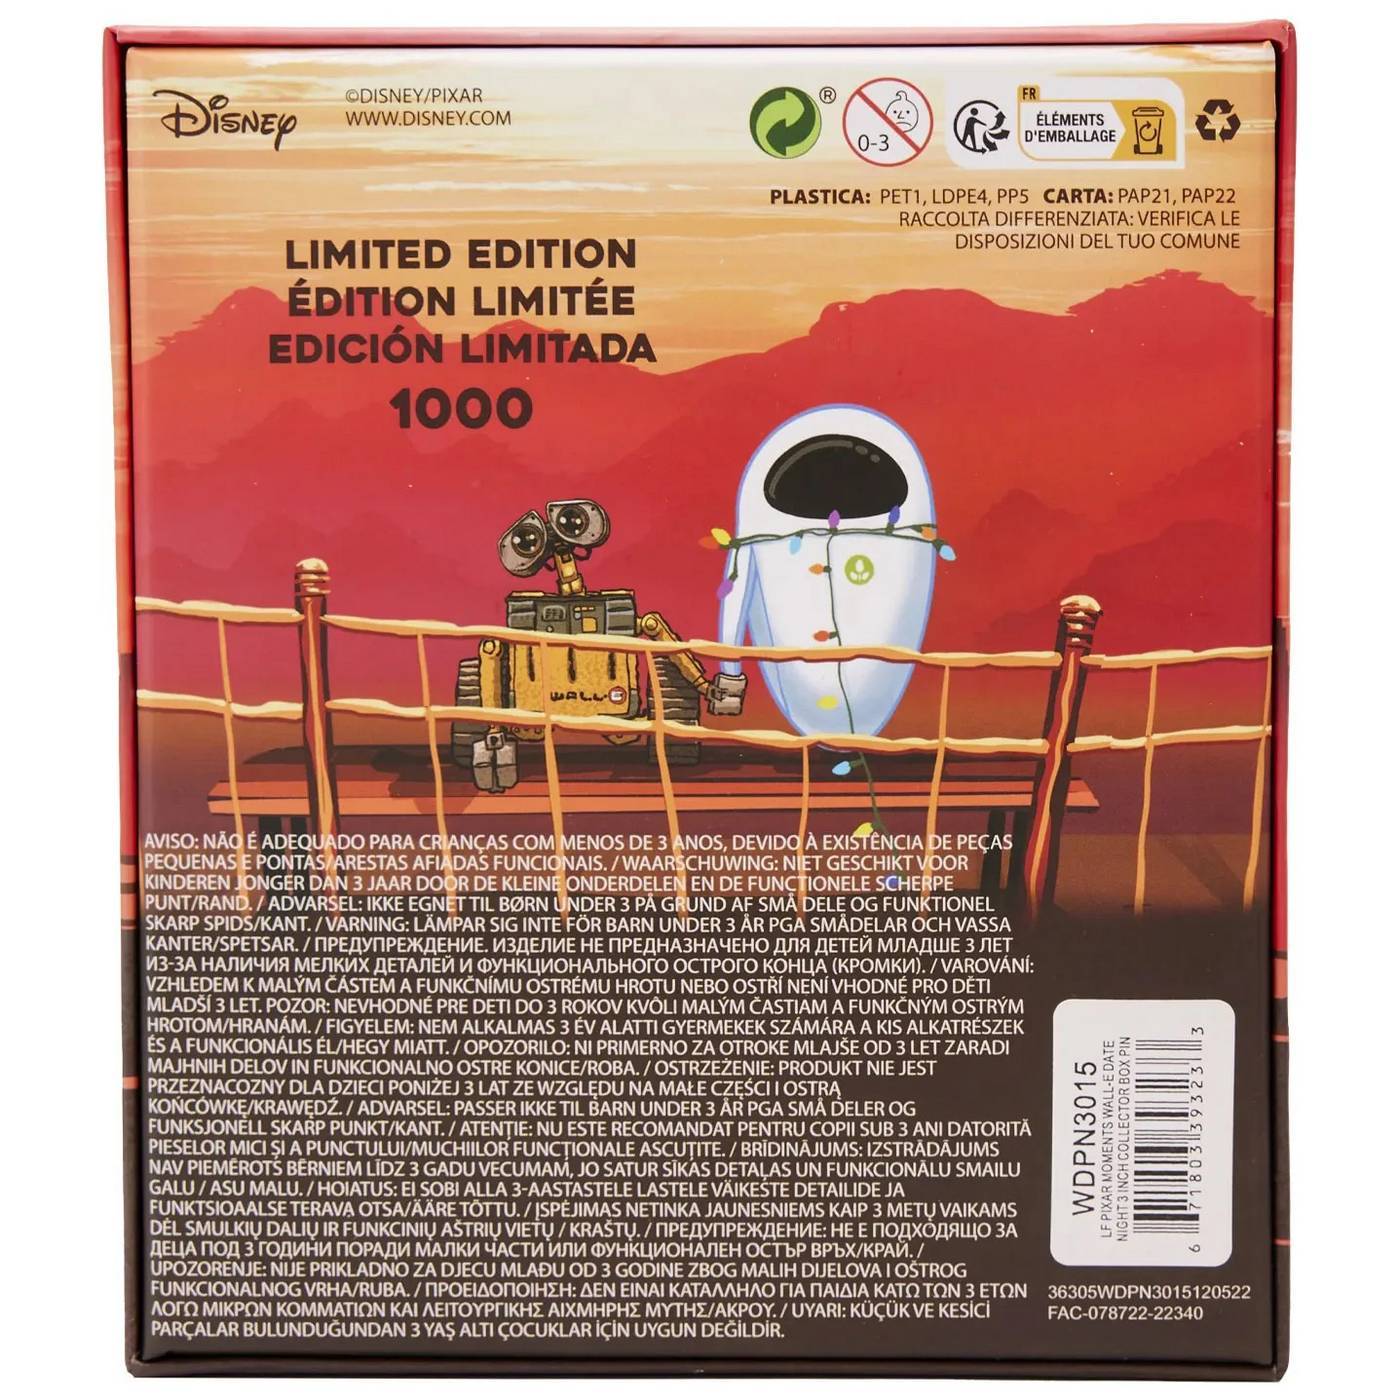 Wall-E Date Night Collector Box